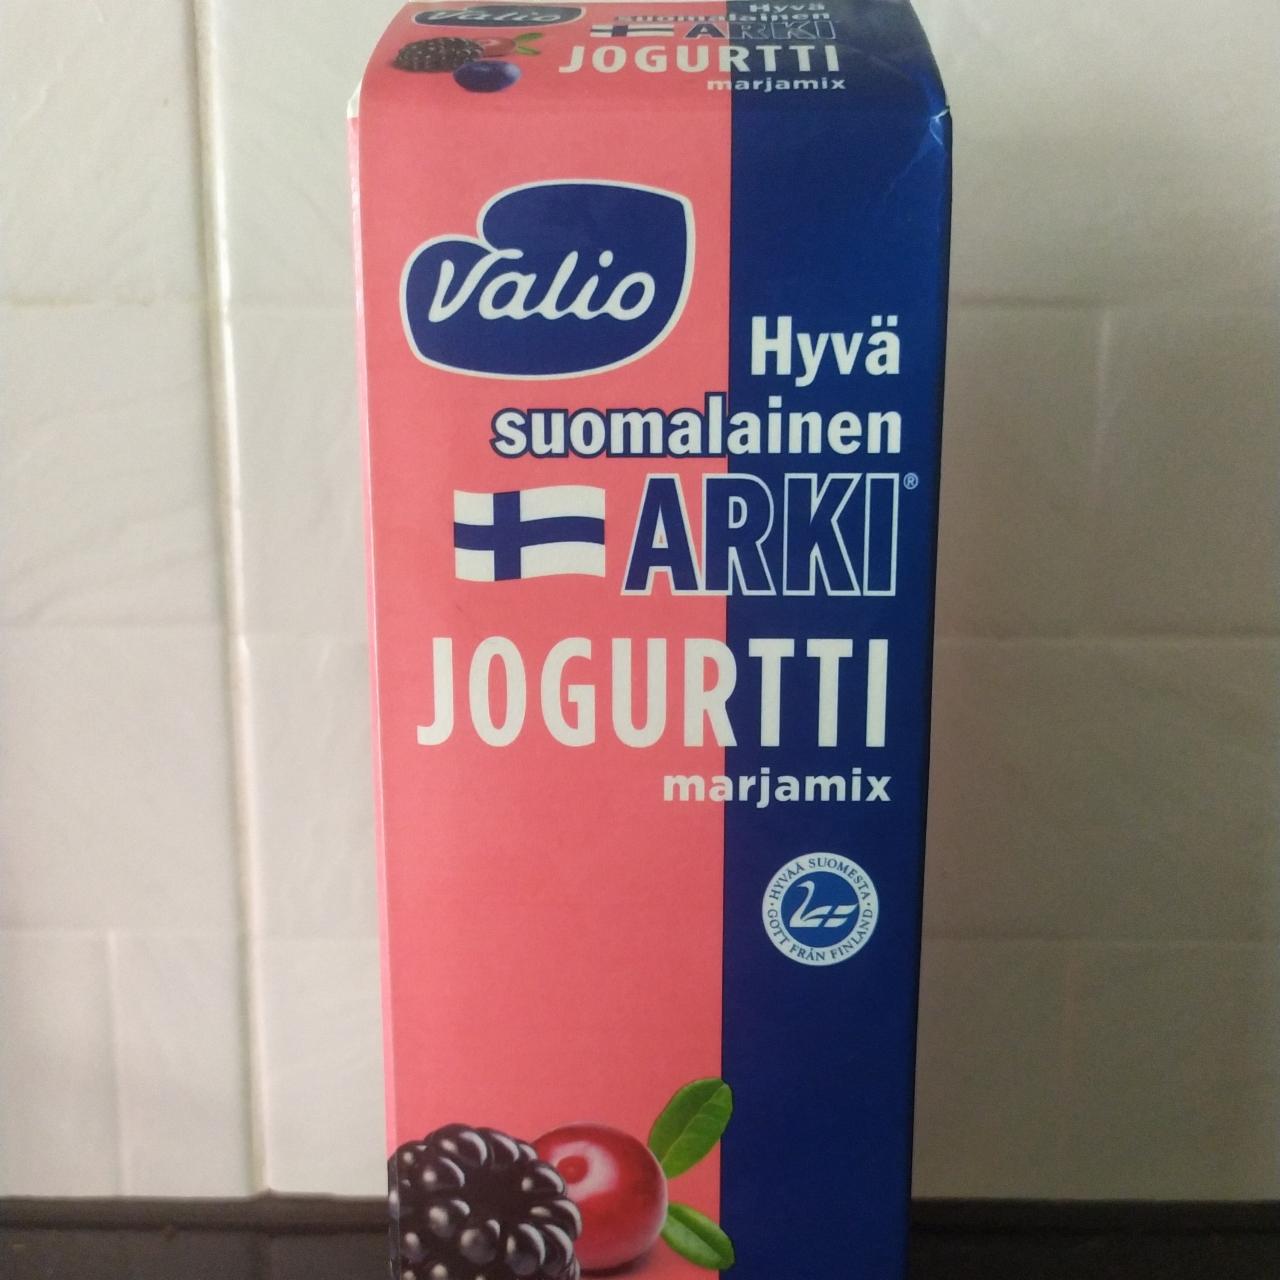 Фото - Йогурт Hava suomalainen Arki jogurtti marjamix Valio